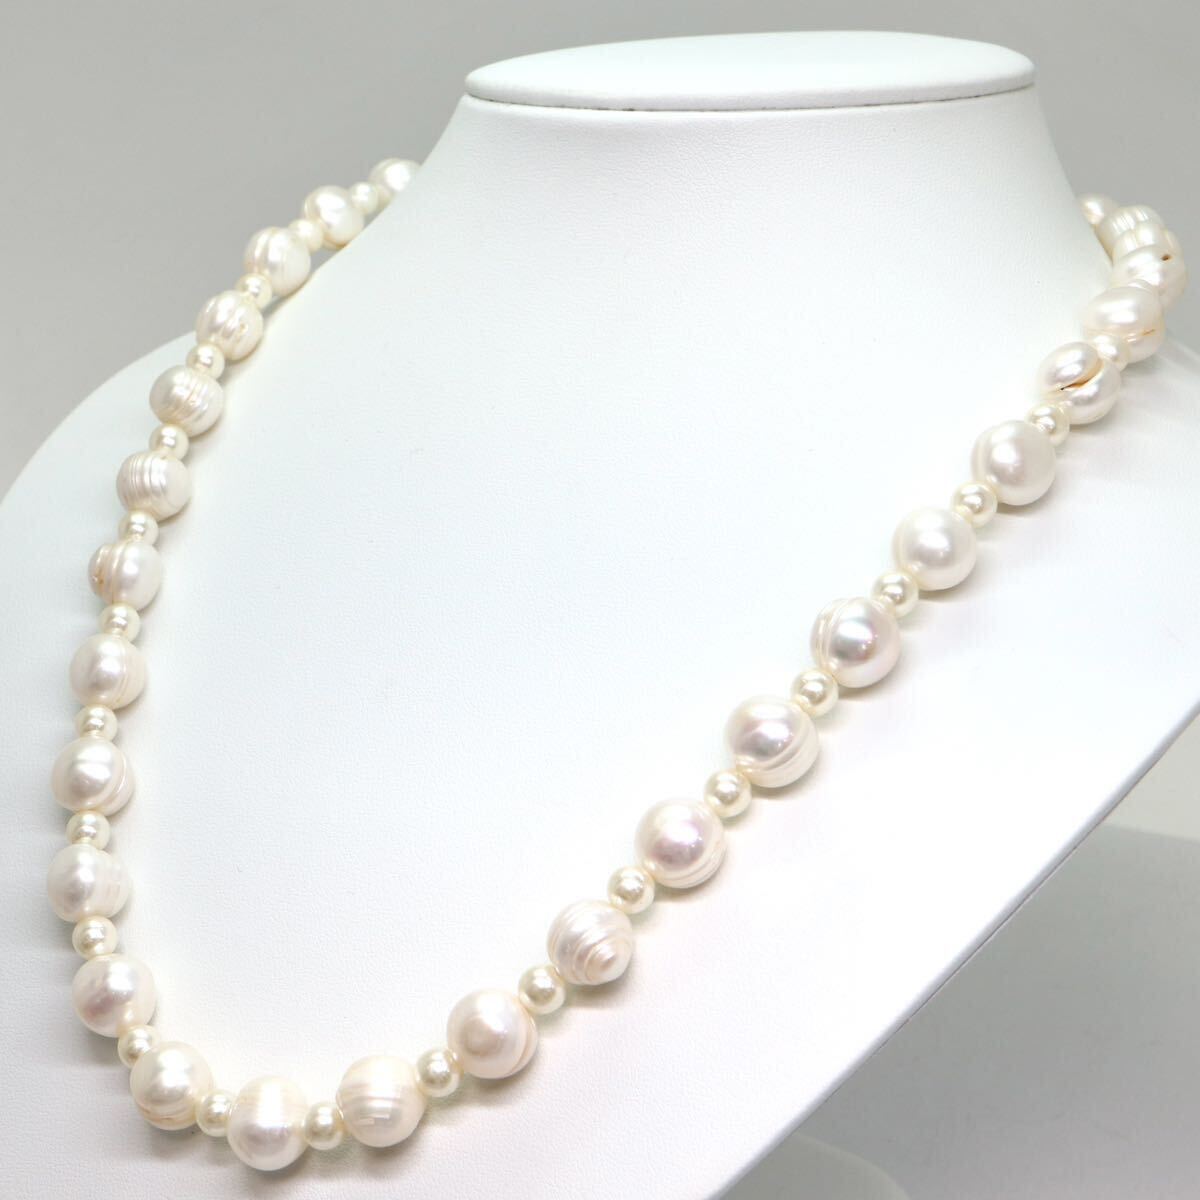 《本真珠ネックレス》A 約5.5-10.5mm珠 61.8g 約55cm pearl necklace ジュエリー jewelry DA0/DA0の画像3